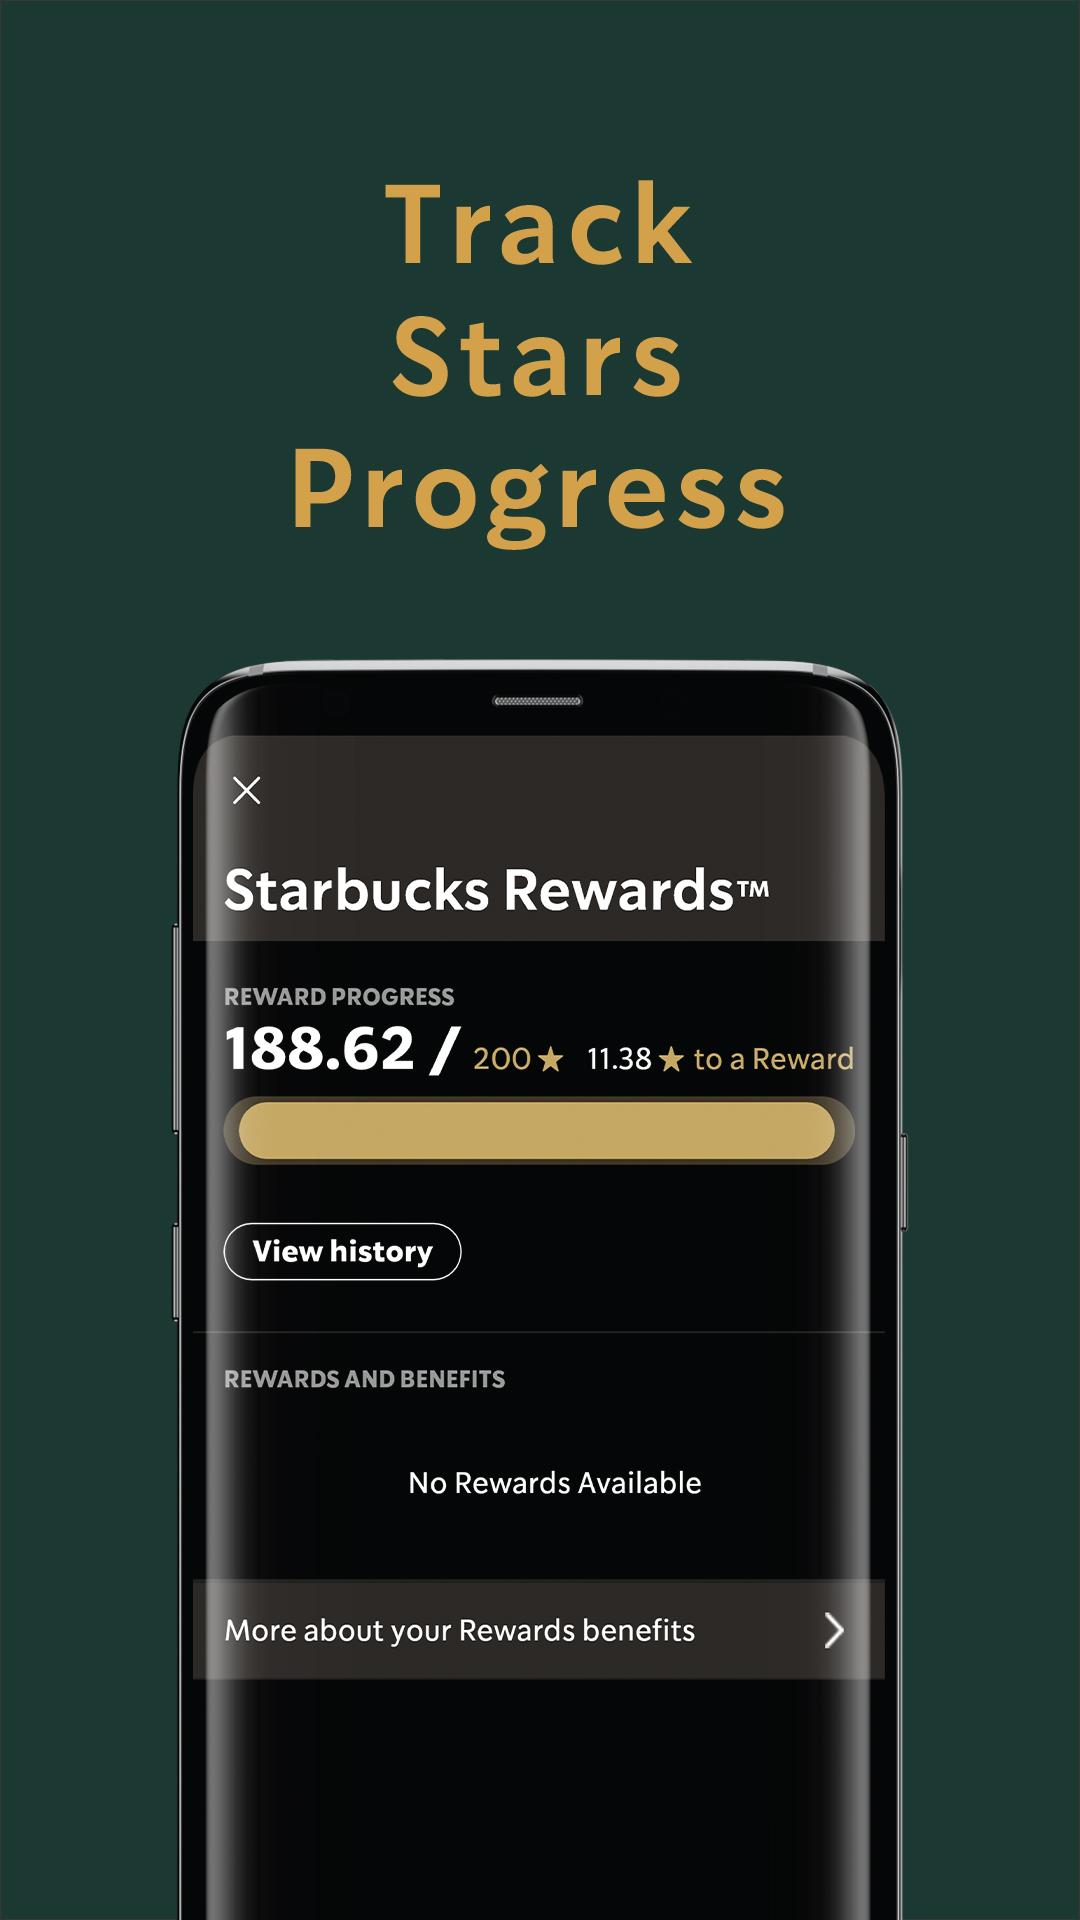 App starbucks malaysia Starbucks has